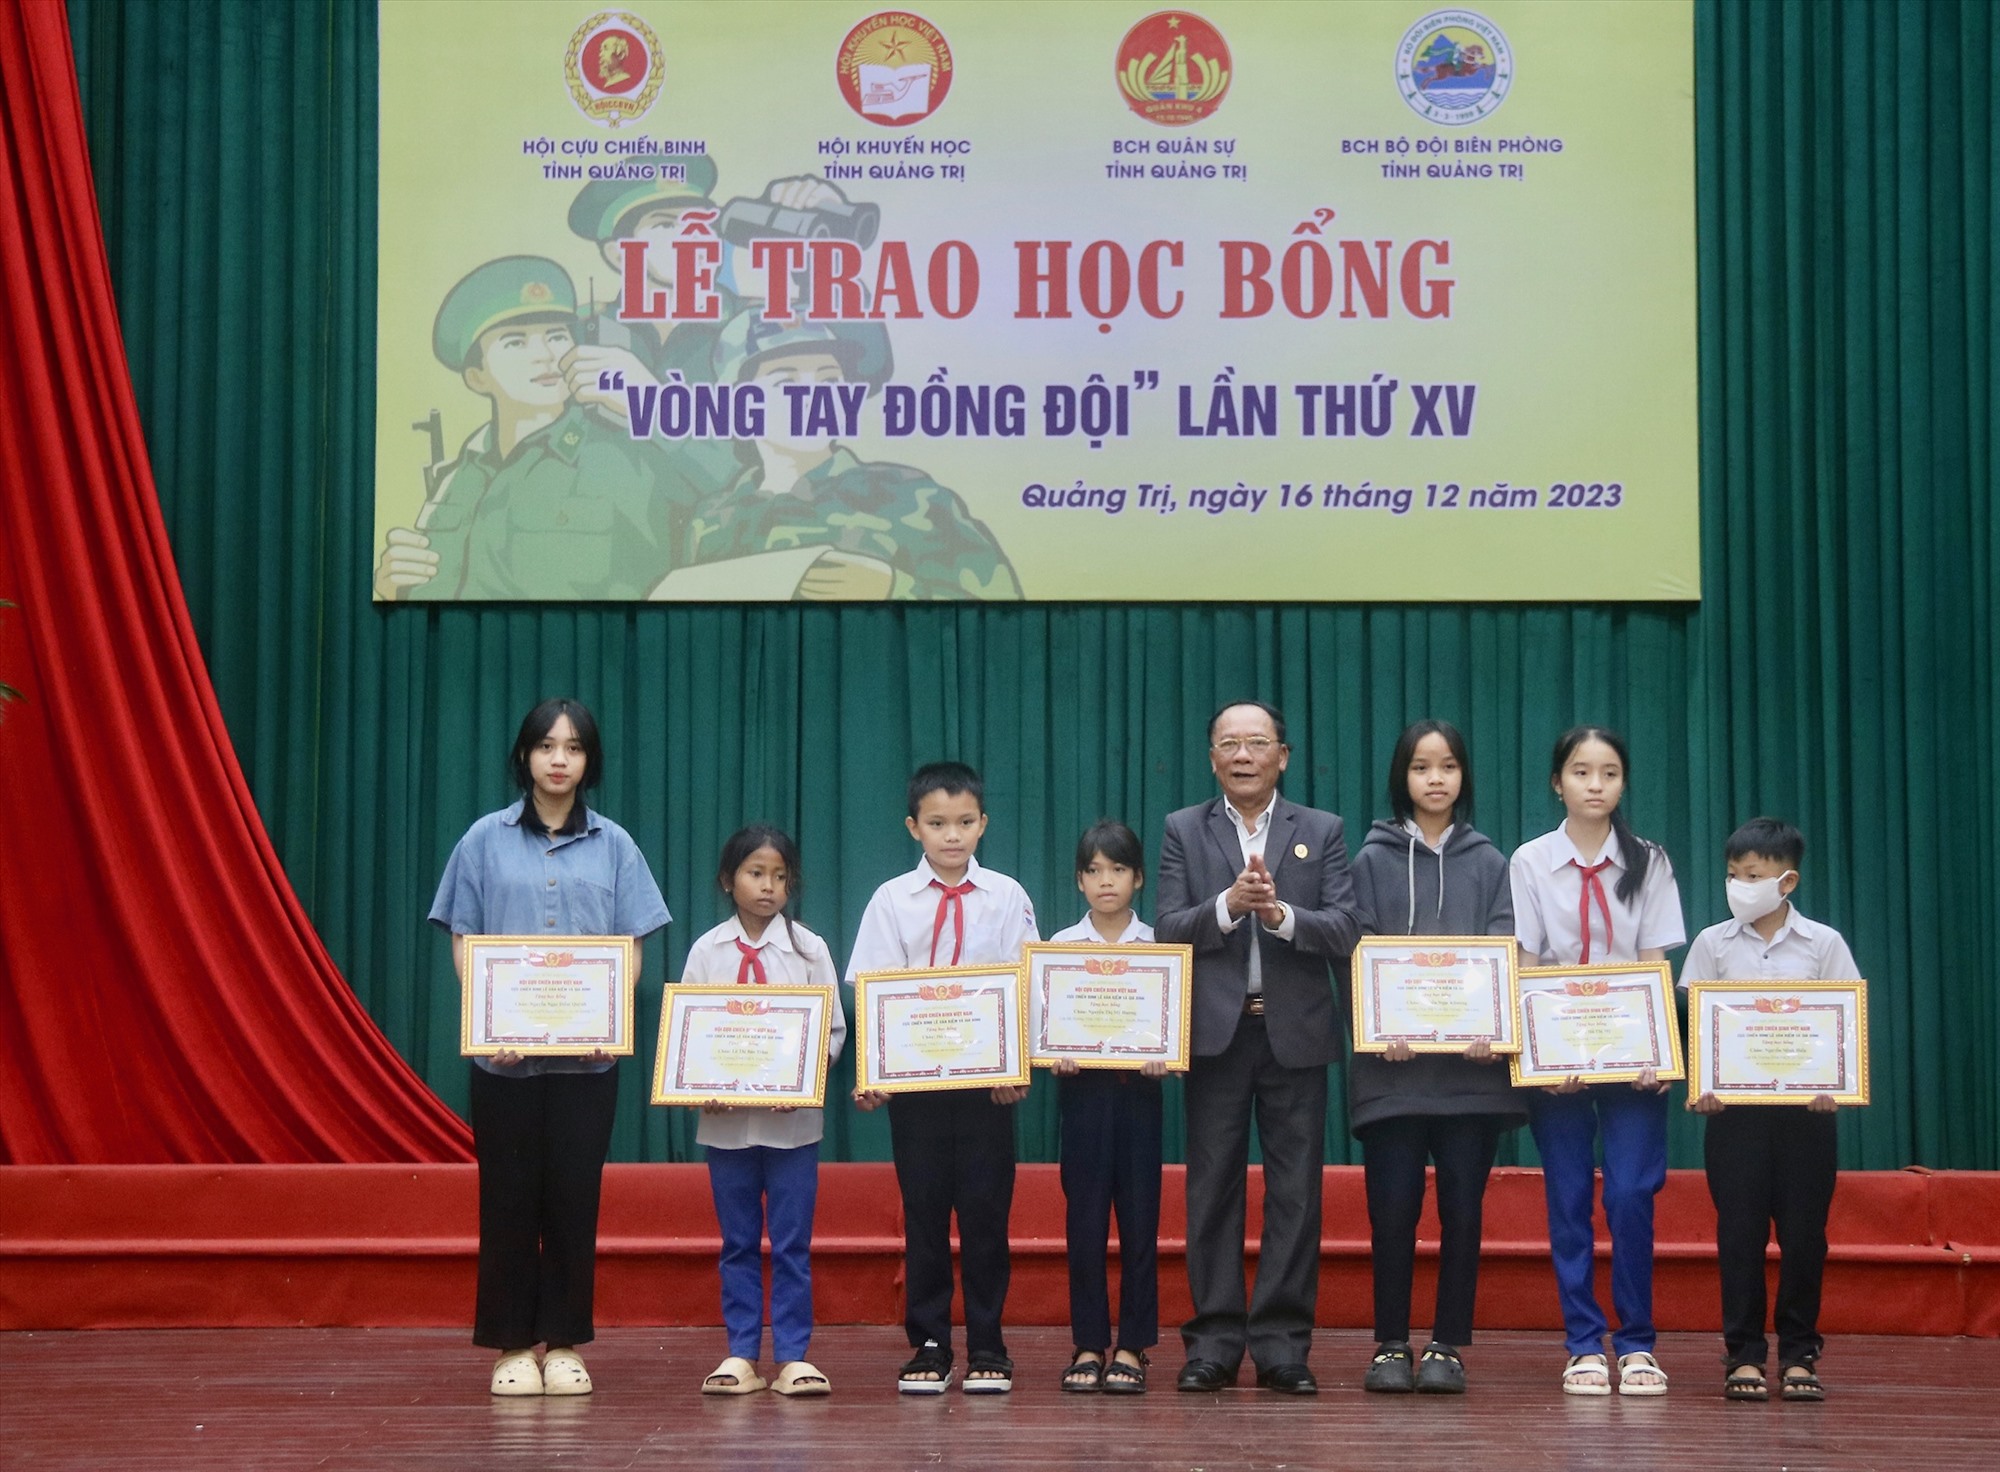 Trao học bổng từ Quỹ học bổng Khuyến học Hội Cựu chiến binh Việt Nam phối hợp với Cựu chiến binh Lê Văn Kiểm và gia đình cho các em học sinh - Ảnh: N.B